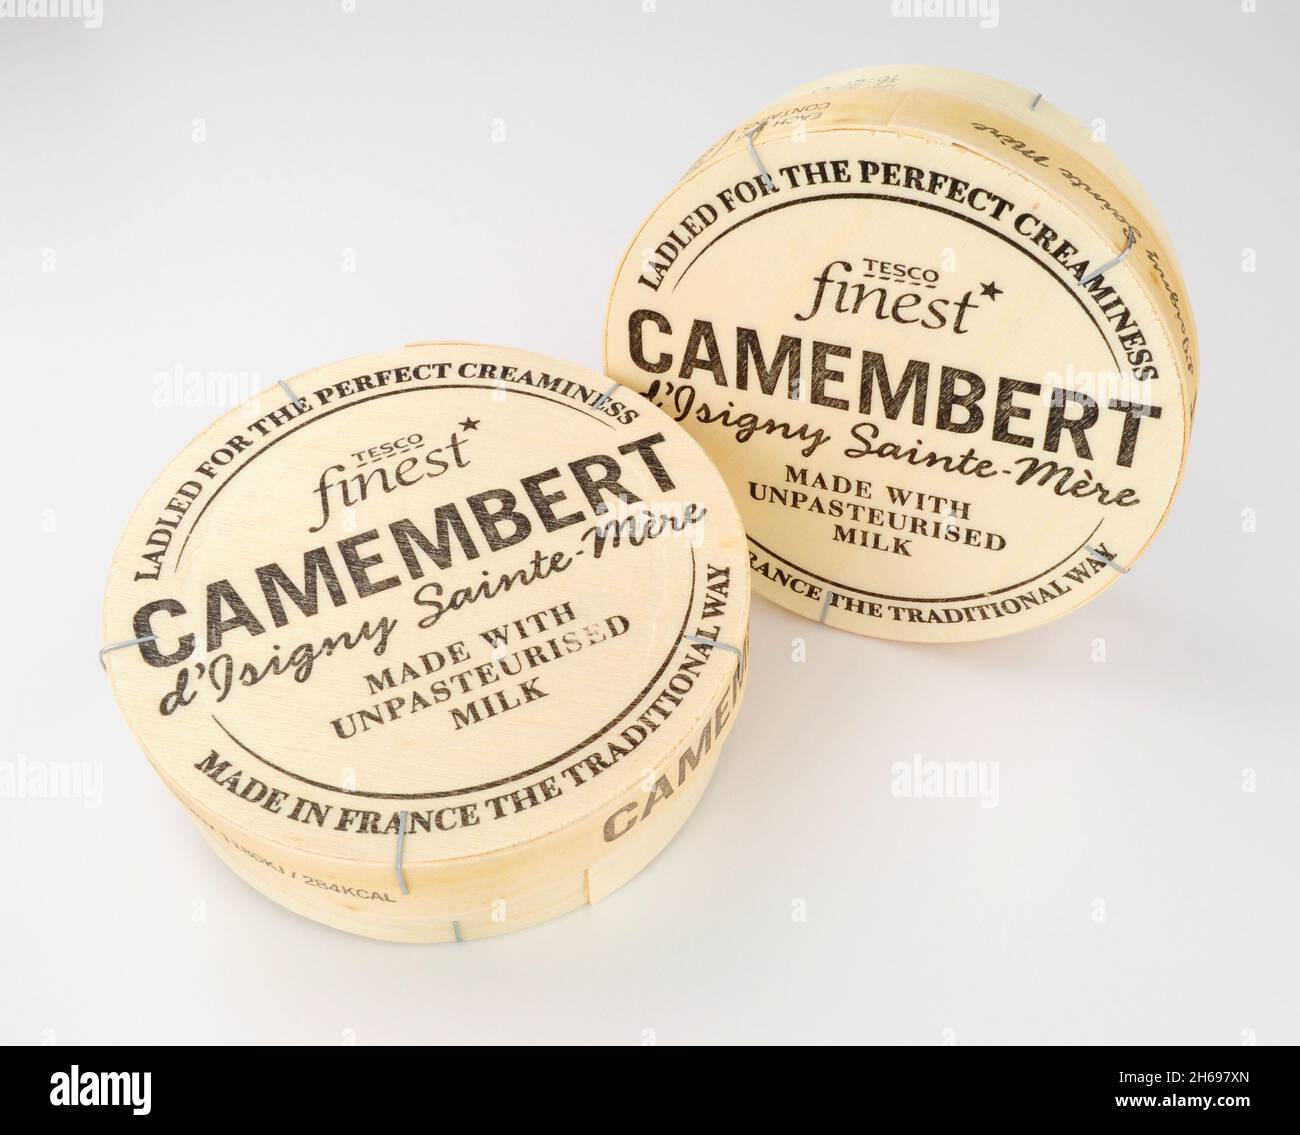 Supermercato Tesco formaggio cremoso francese Camembert a base di latte non pastorizzato Foto Stock